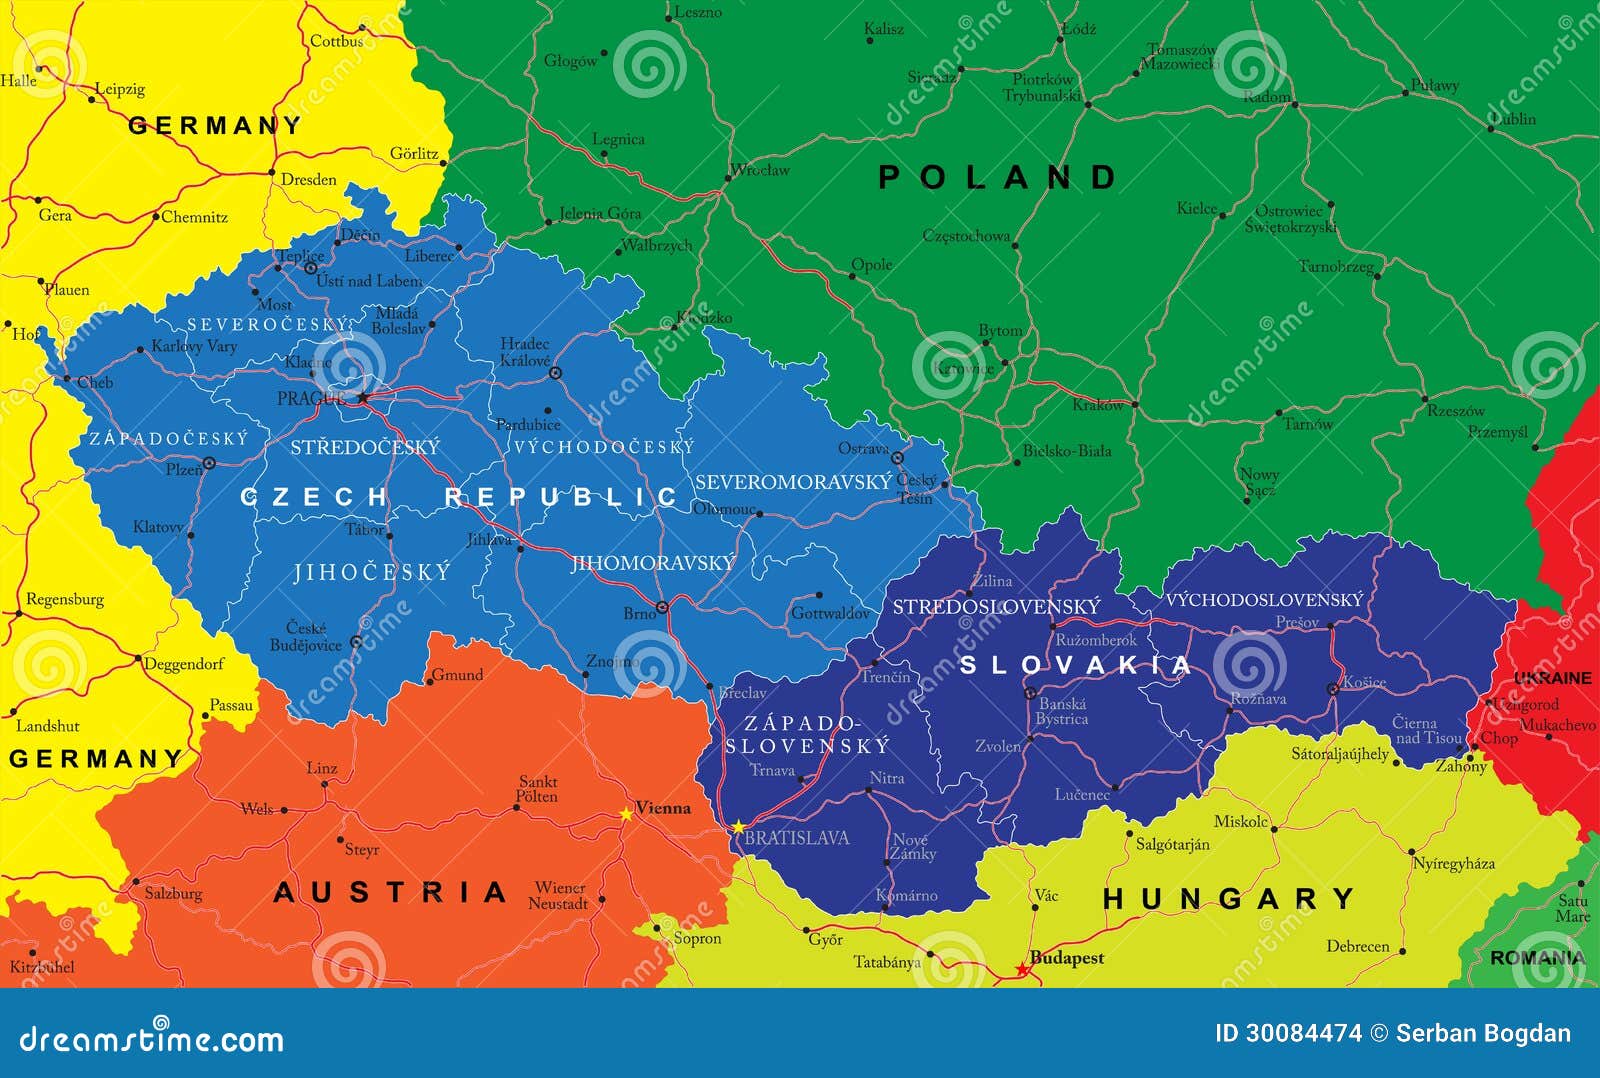 Чехословакия чехия и словакия. Чехия и Словакия на карте. Чехословакия на карте. Чехия на карте с границами. Чешская и словацкая Федеративная Республика.